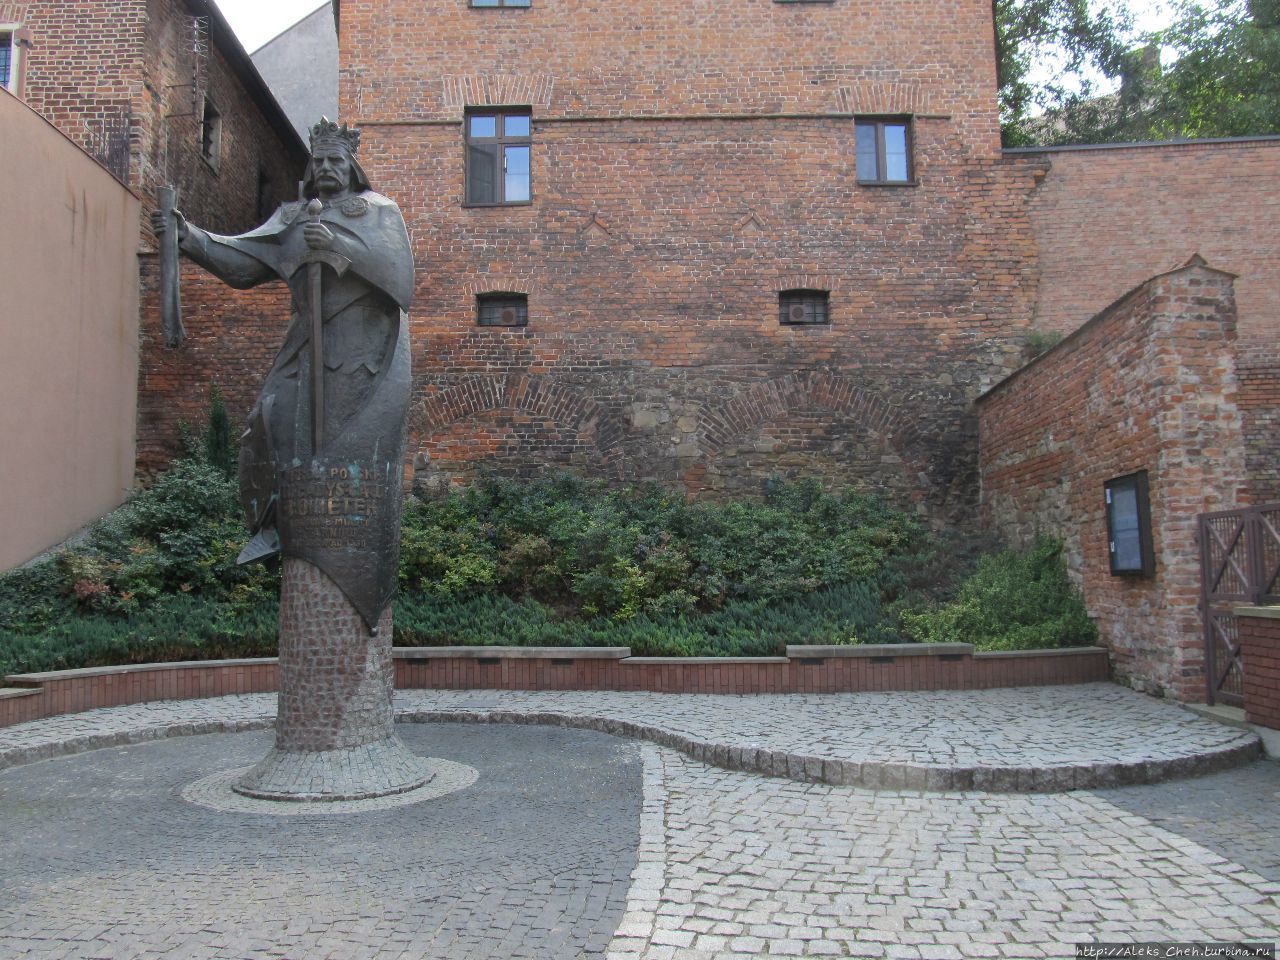 Памятник польскому королю Владиславу I Локетеку, правившему Польшей с 1320 по 1333 год.